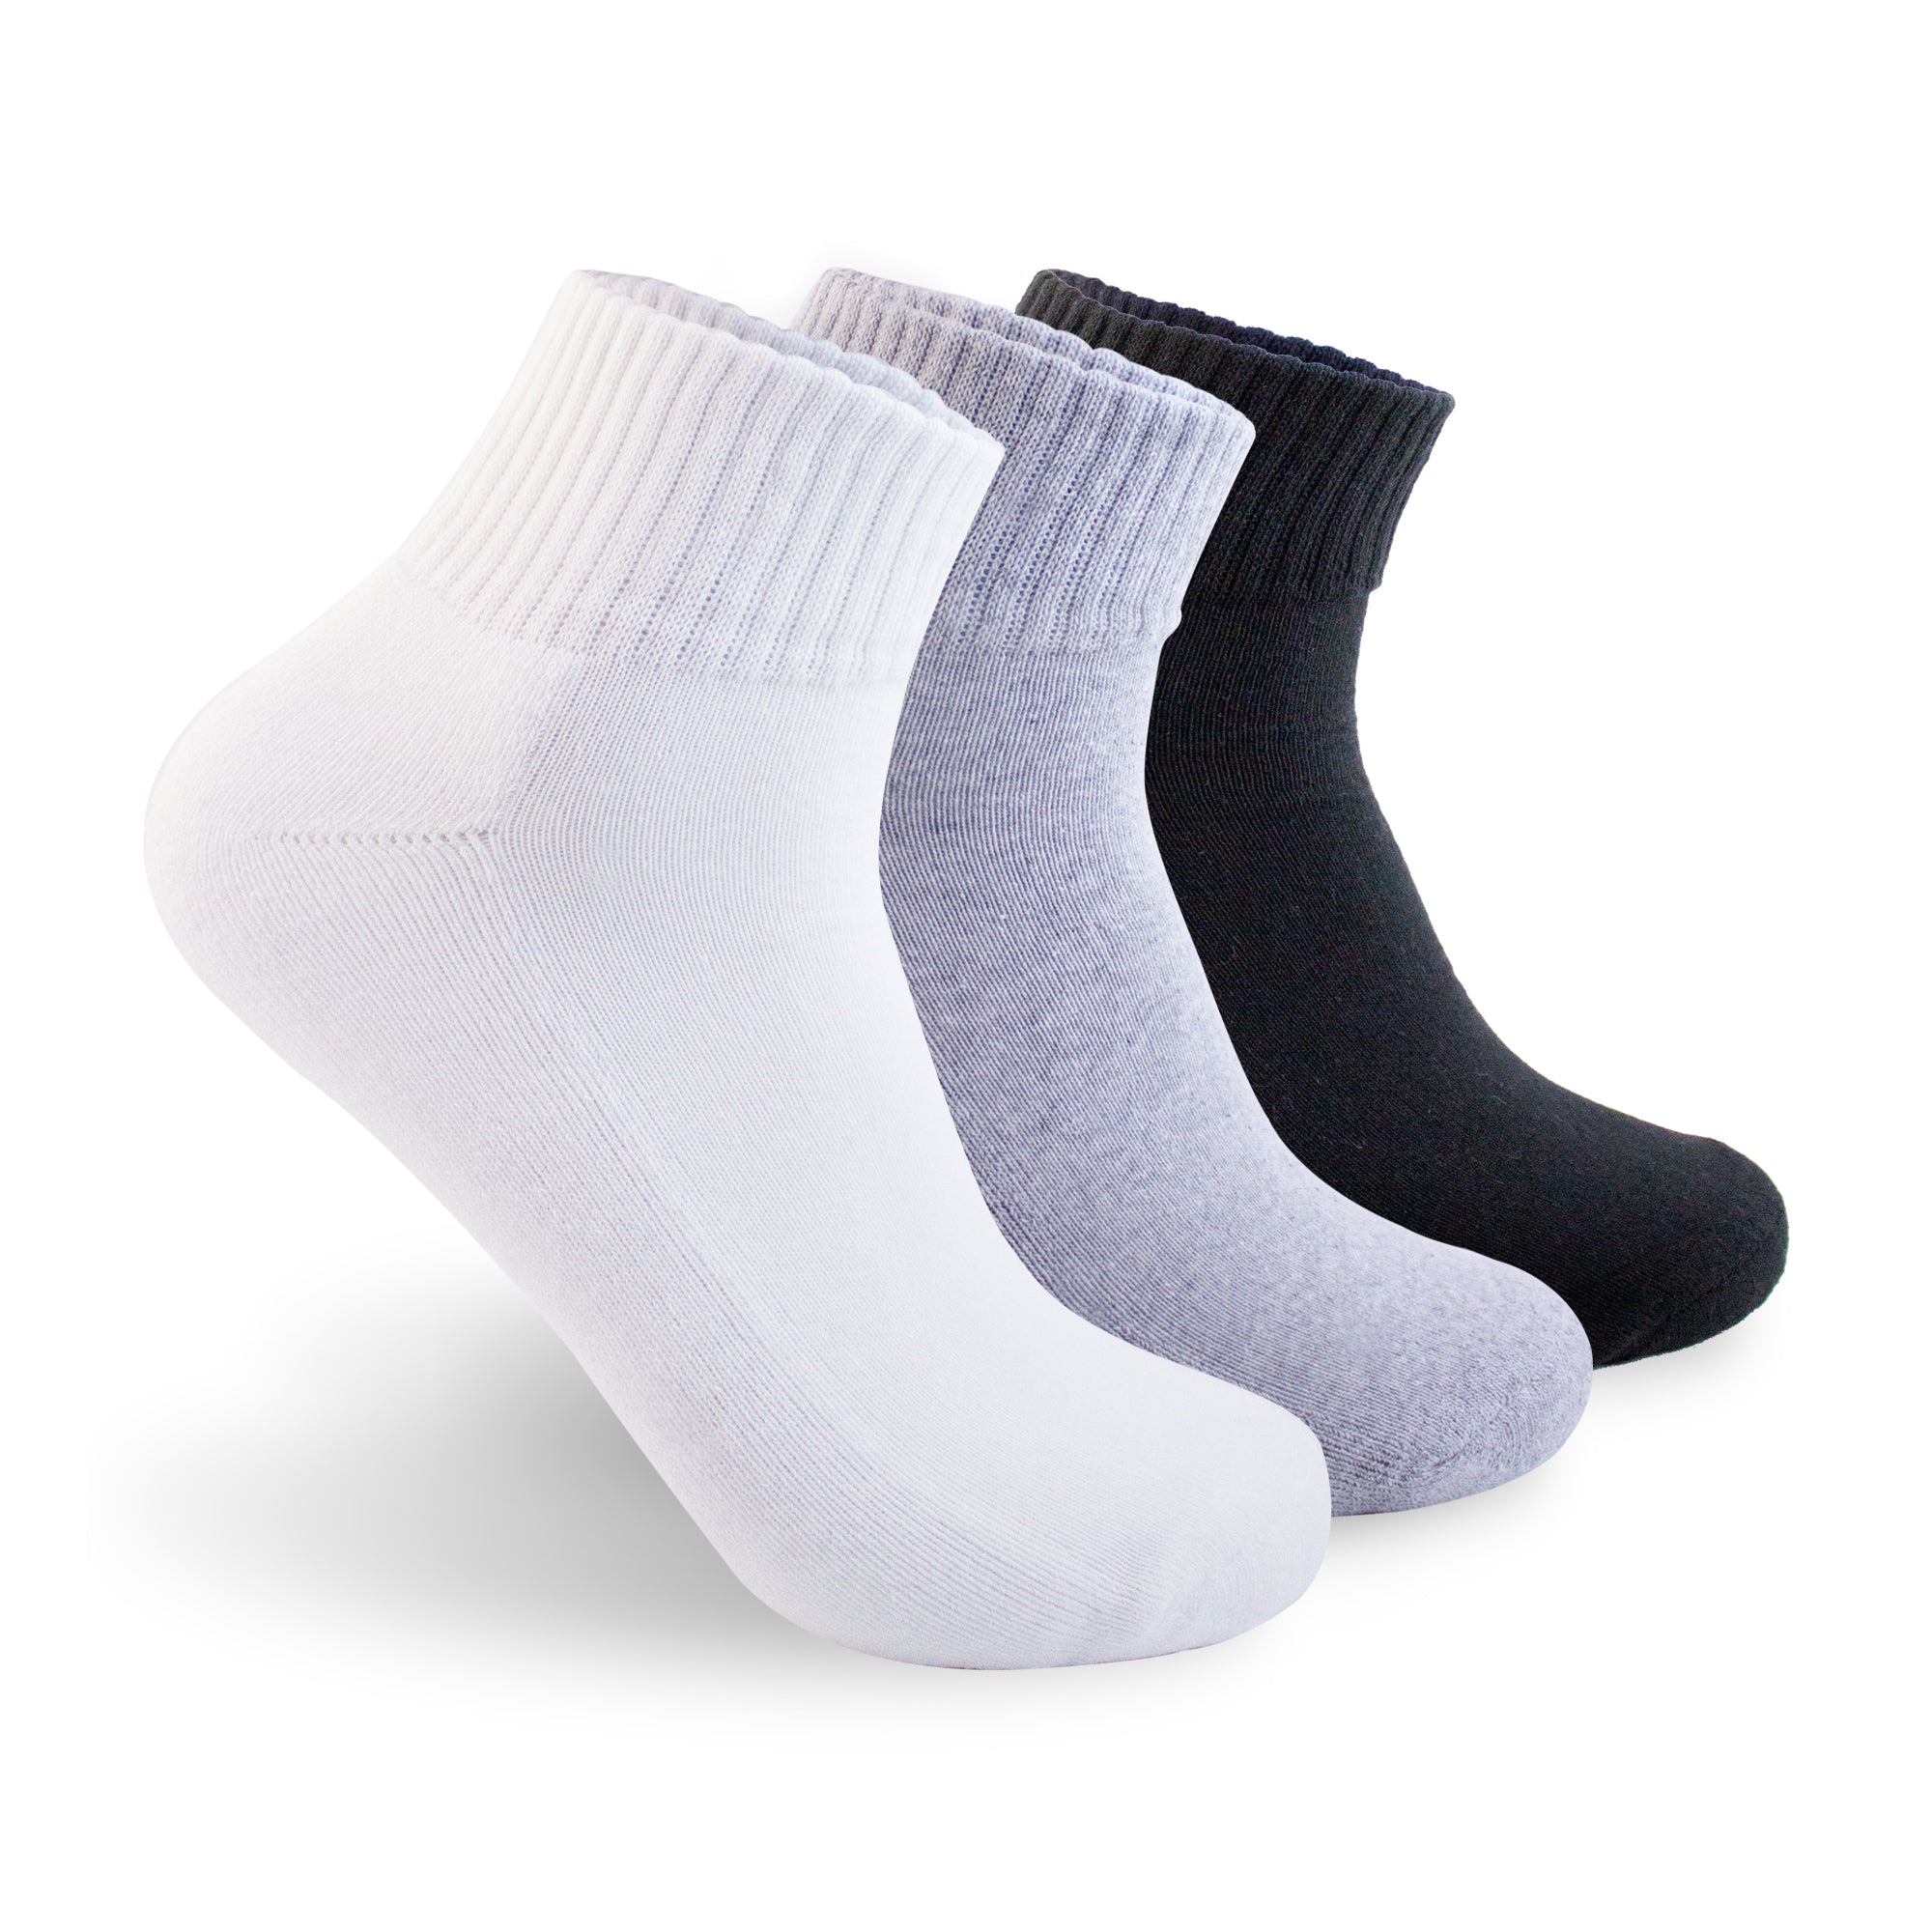 Calcetines cortos deportivos básicos 3 pack blanco, gris y negro